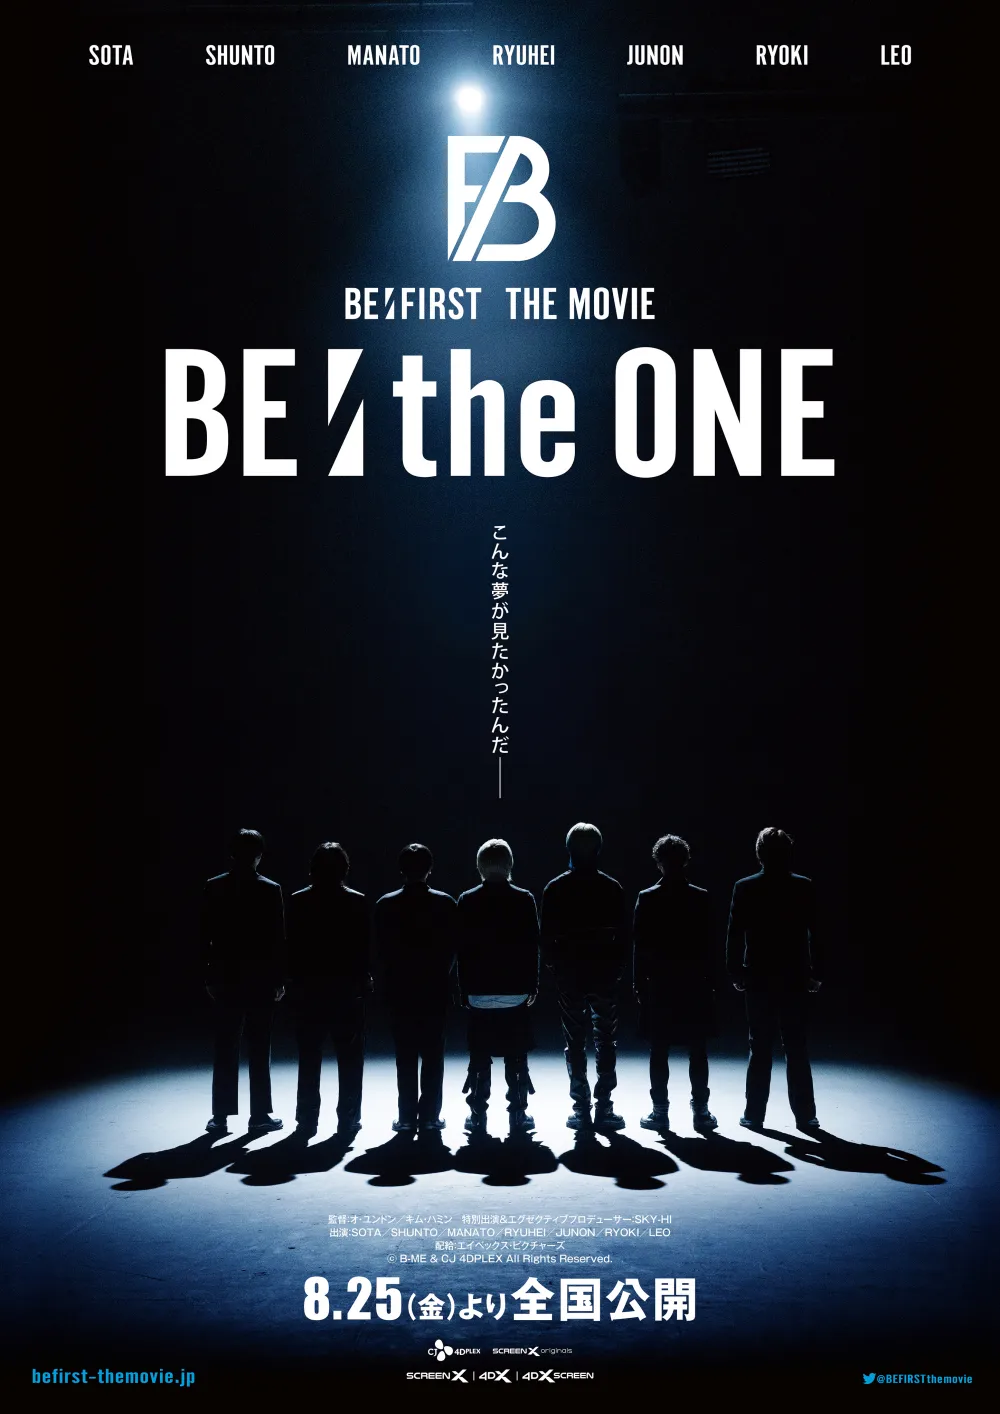 【画像】映画『BE:the ONE』ポスタービジュアル